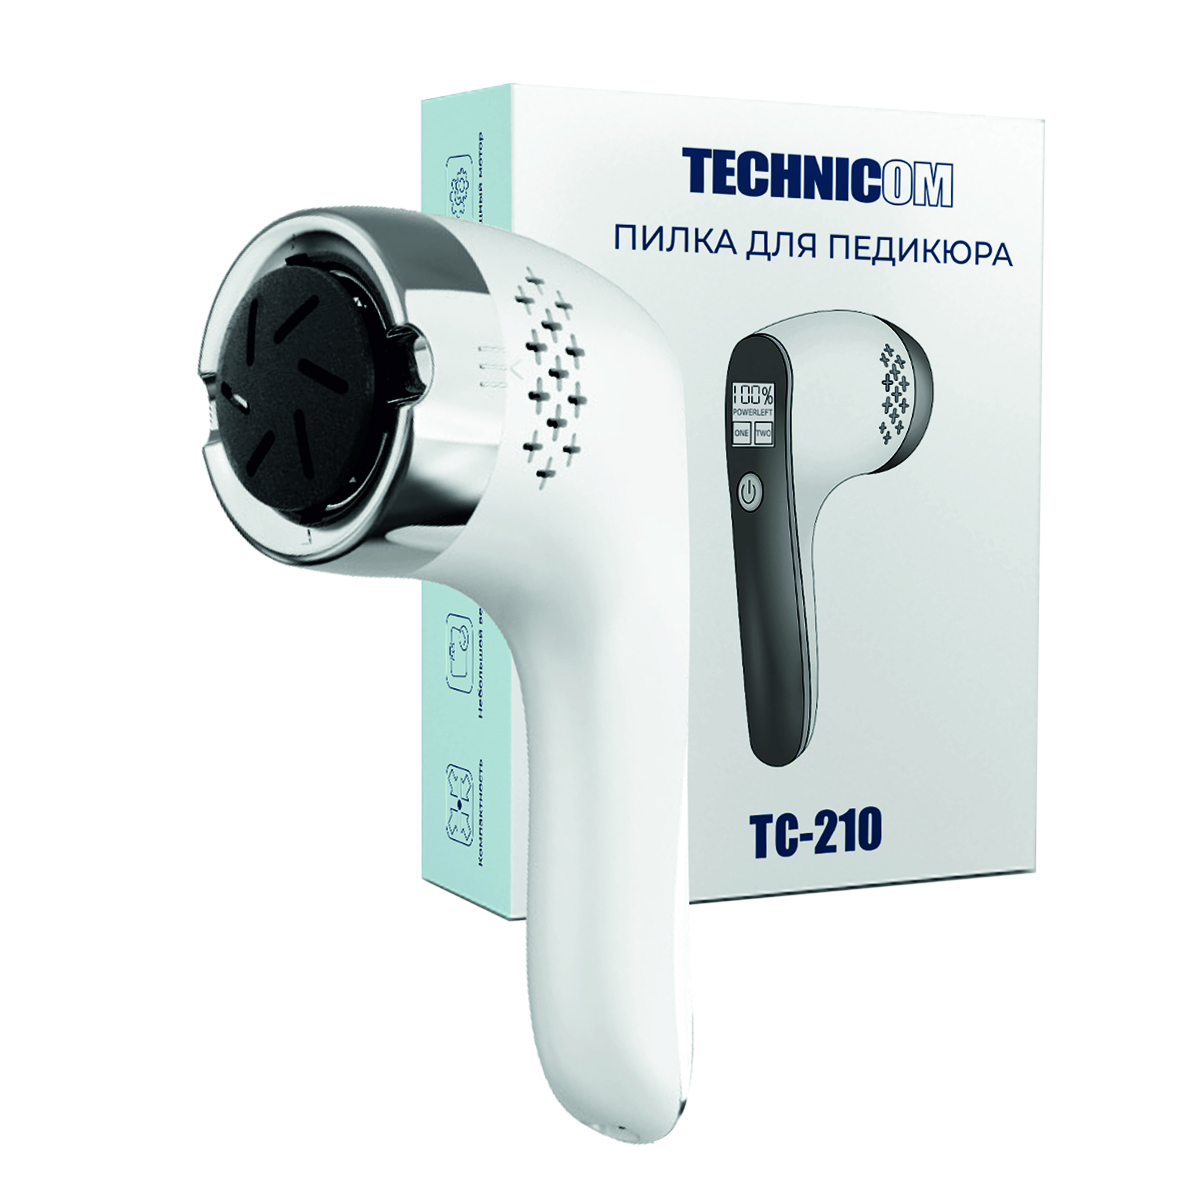 Пилка для педикюра TECHNICOM TC-210 роликовая пилка для педикюра с уф лампой technicom tc 200